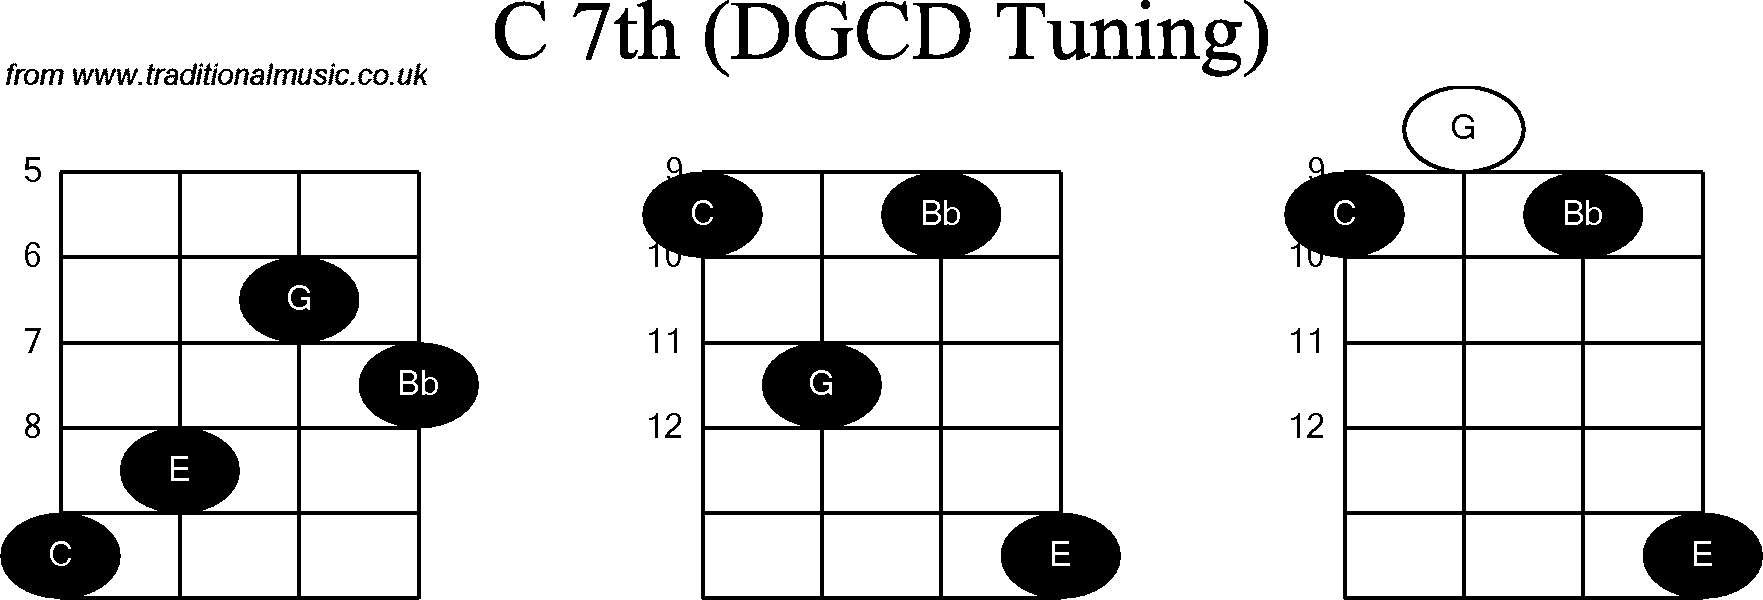 Chord diagrams for Banjo(G Modal) C7th